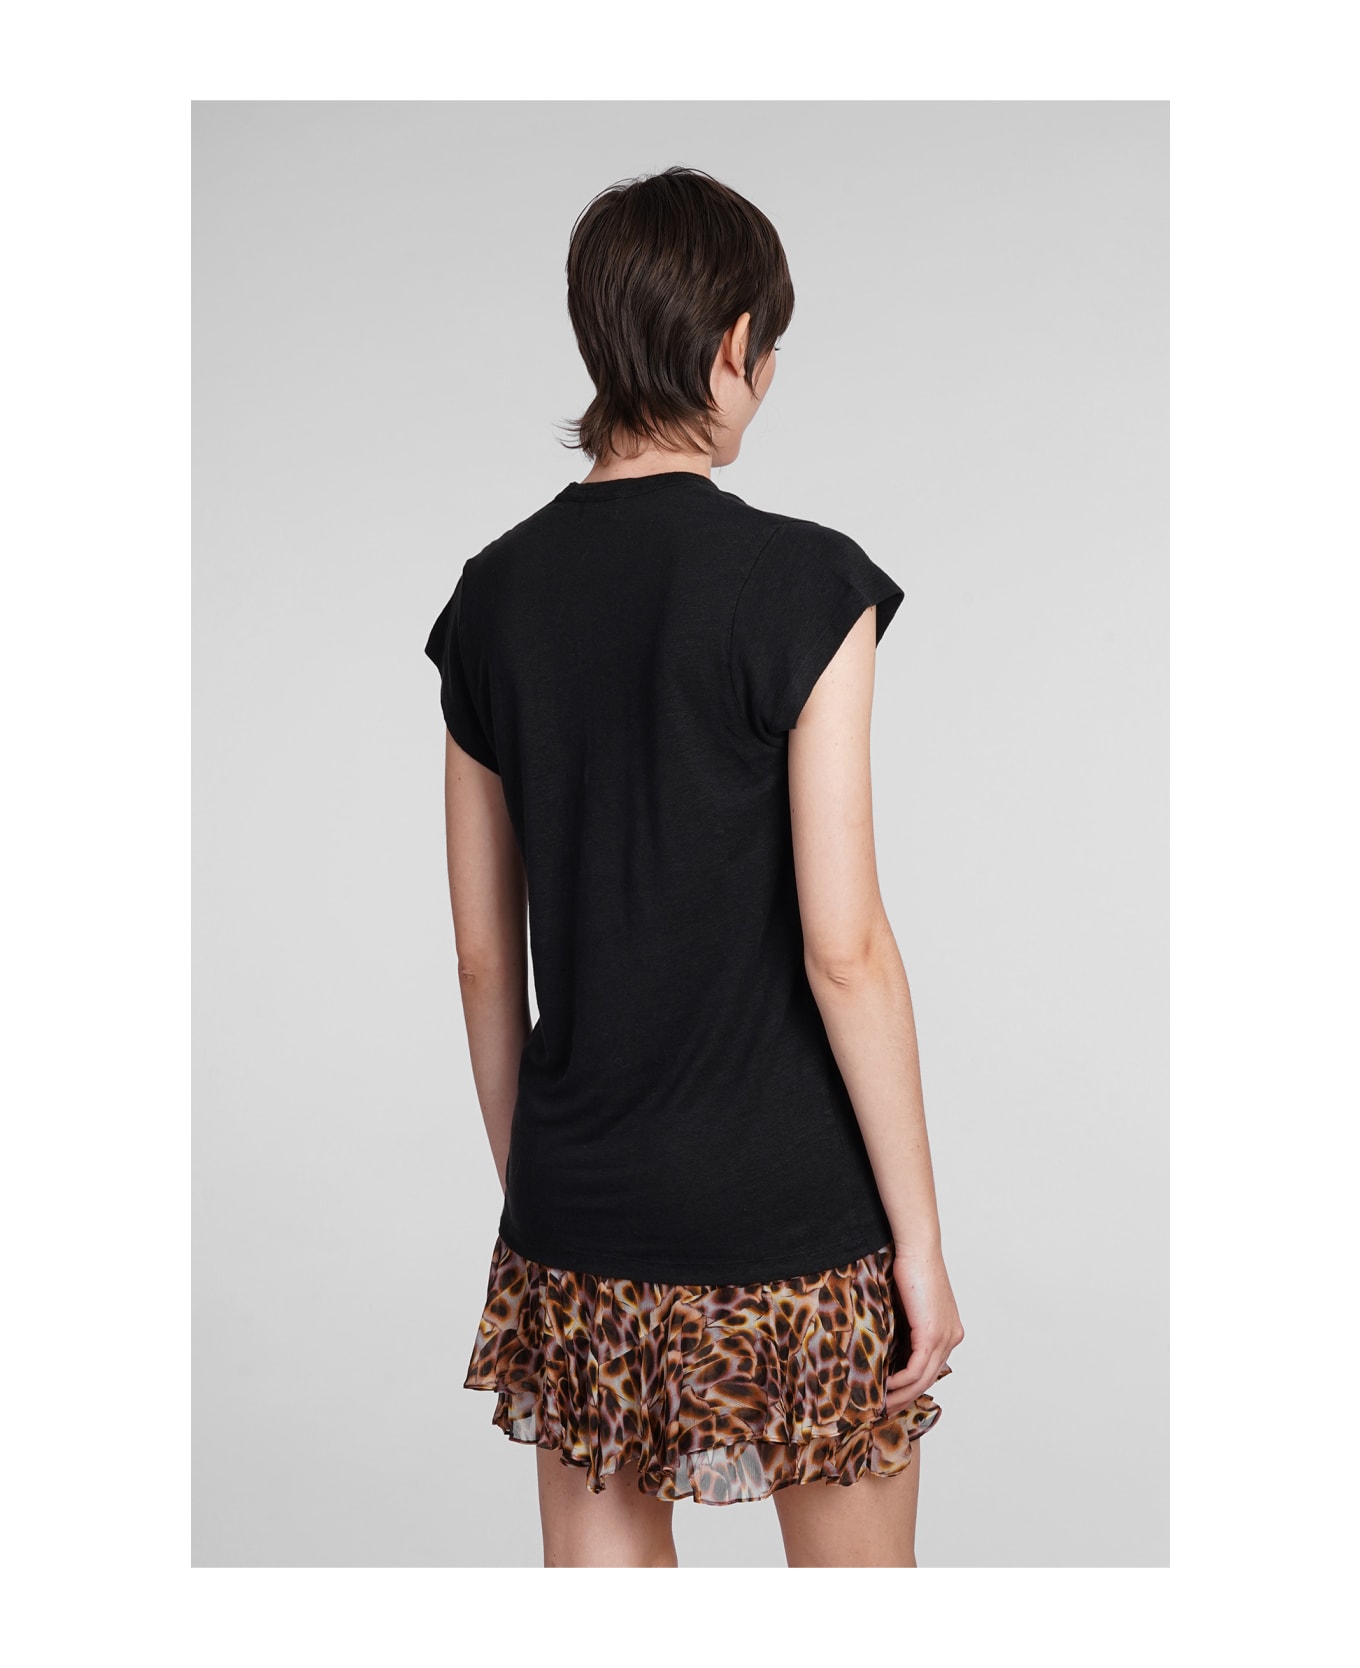 Marant Étoile T-shirt - Black Tシャツ